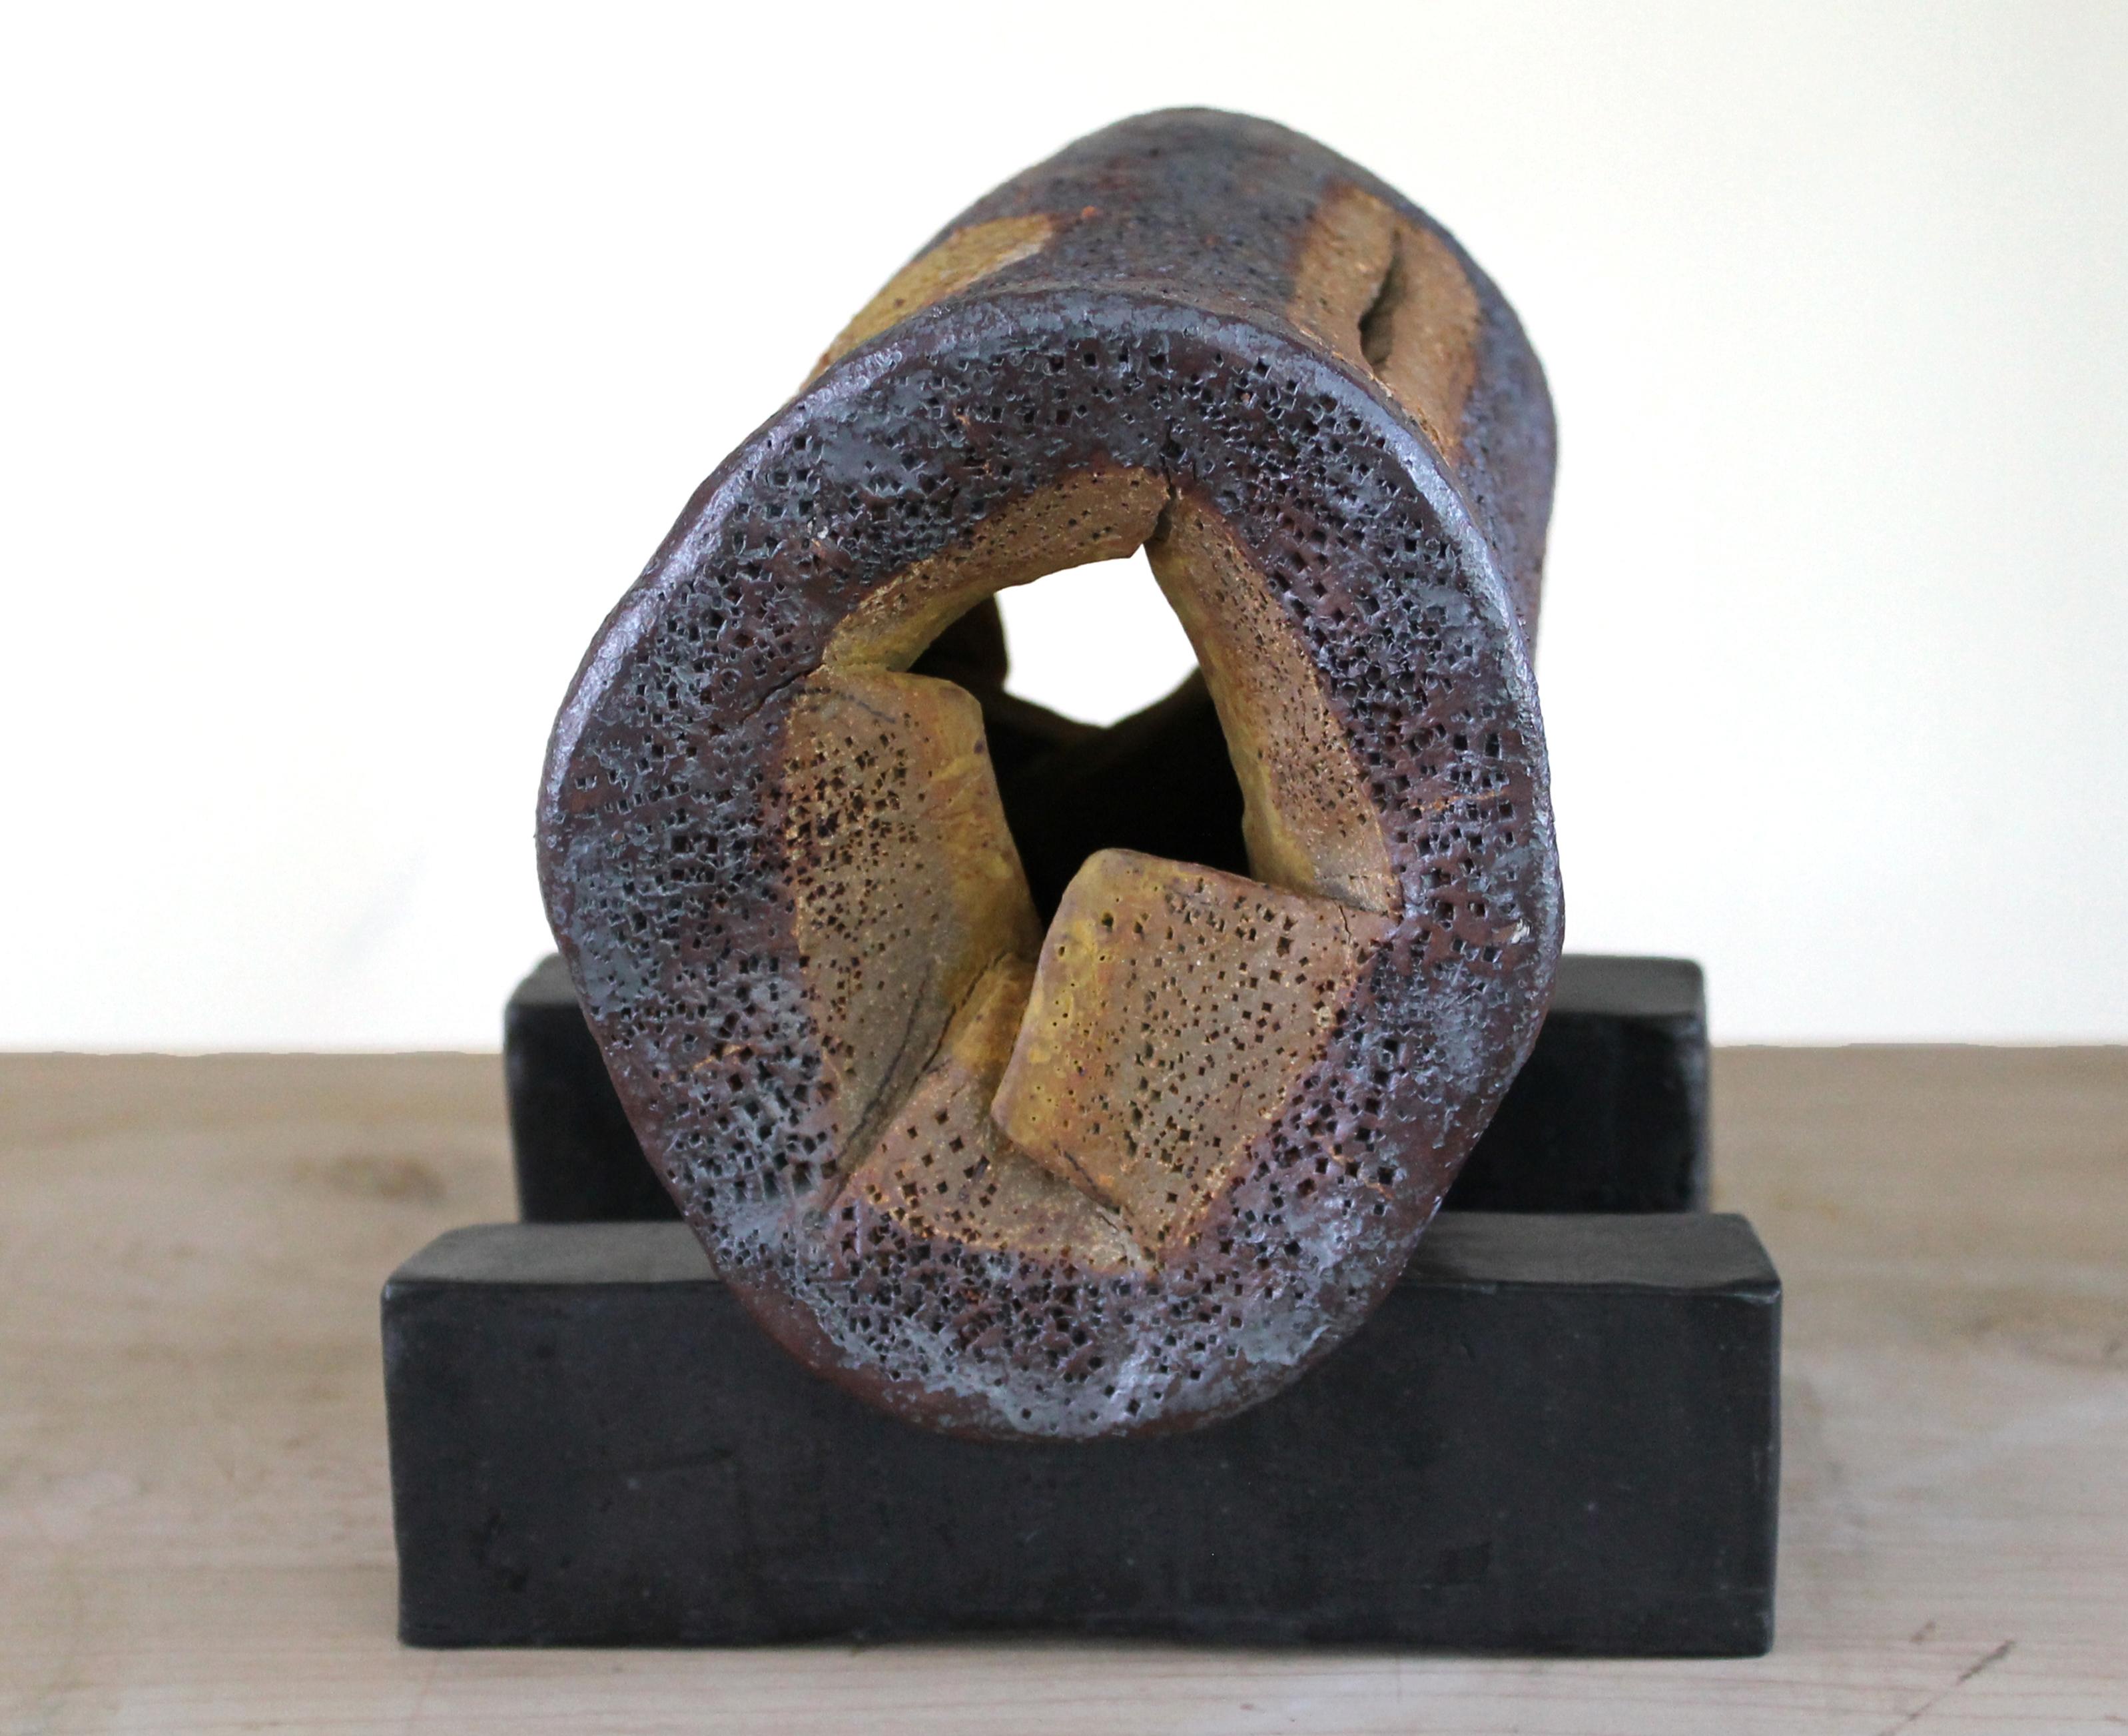 « OBJET ROTIQUE », sculpture, argile, abstrait, contemporain, céramique, érotique - Contemporain Mixed Media Art par Harold Wortsman